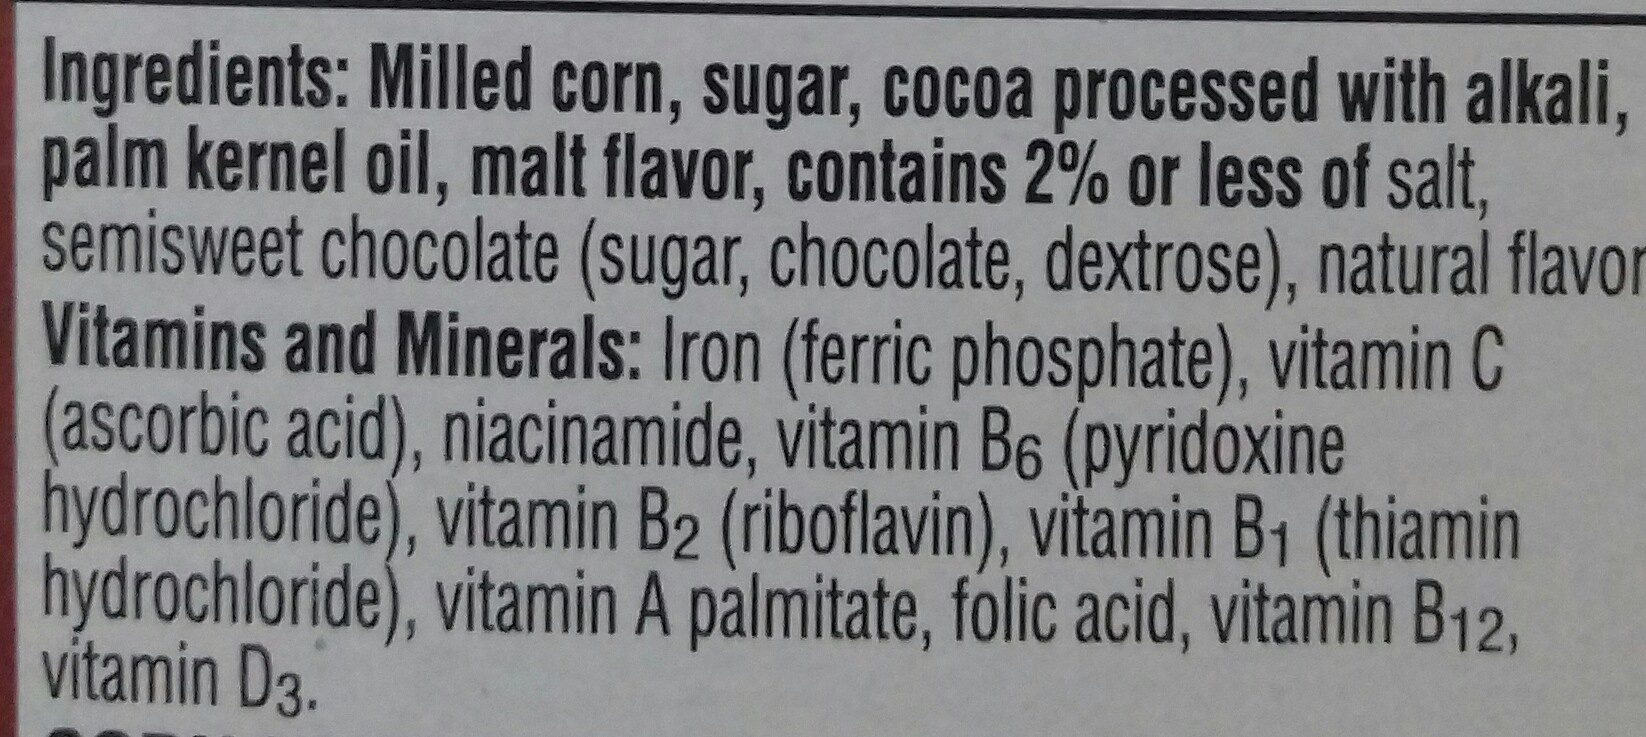 Natural chocolate flavored cereal - Ingredients - en